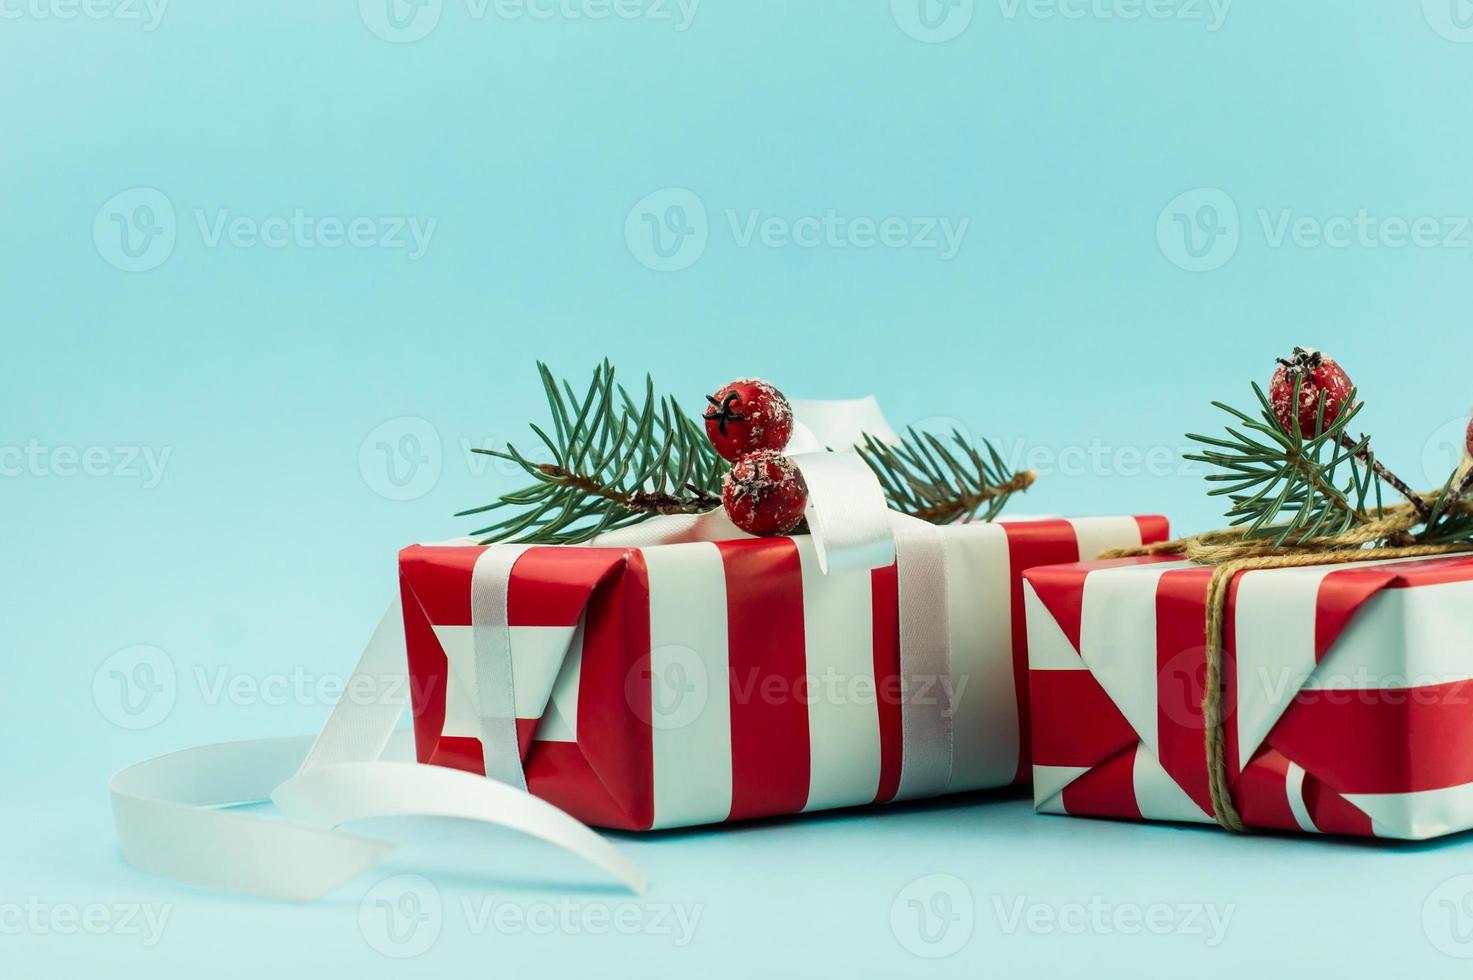 dois presentes festivos em embalagens vermelhas e brancas com elementos decorativos de ramos de abeto e bagas com uma fita branca. fundo azul. foto